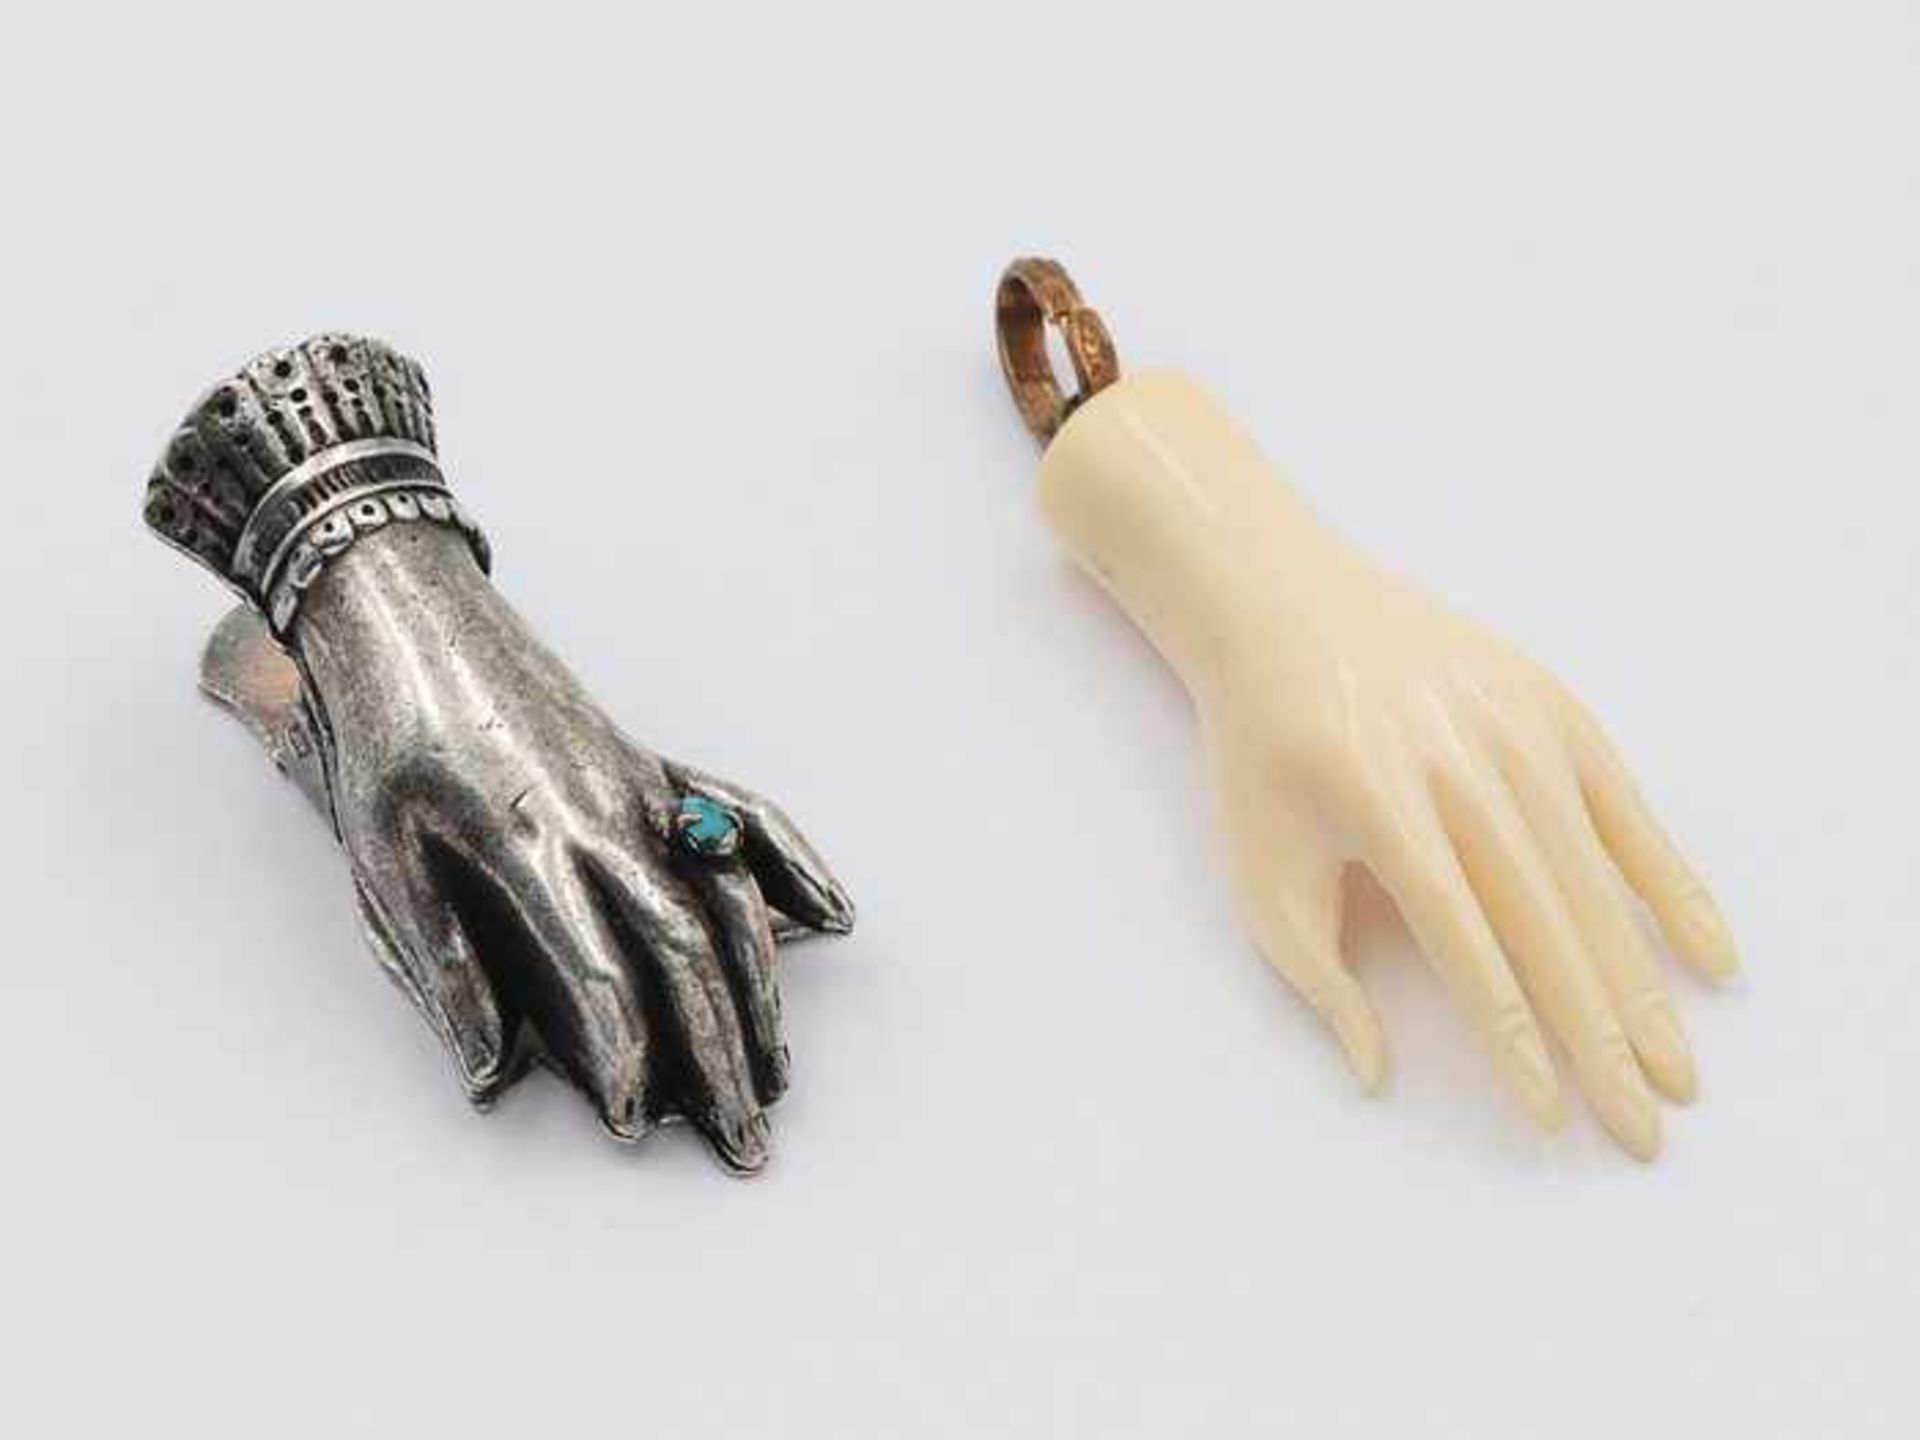 Anhänger - Beinum 1900, zart ausgeformte Hand, Bein, dazu 1x Clip, zarte Damenhand mit